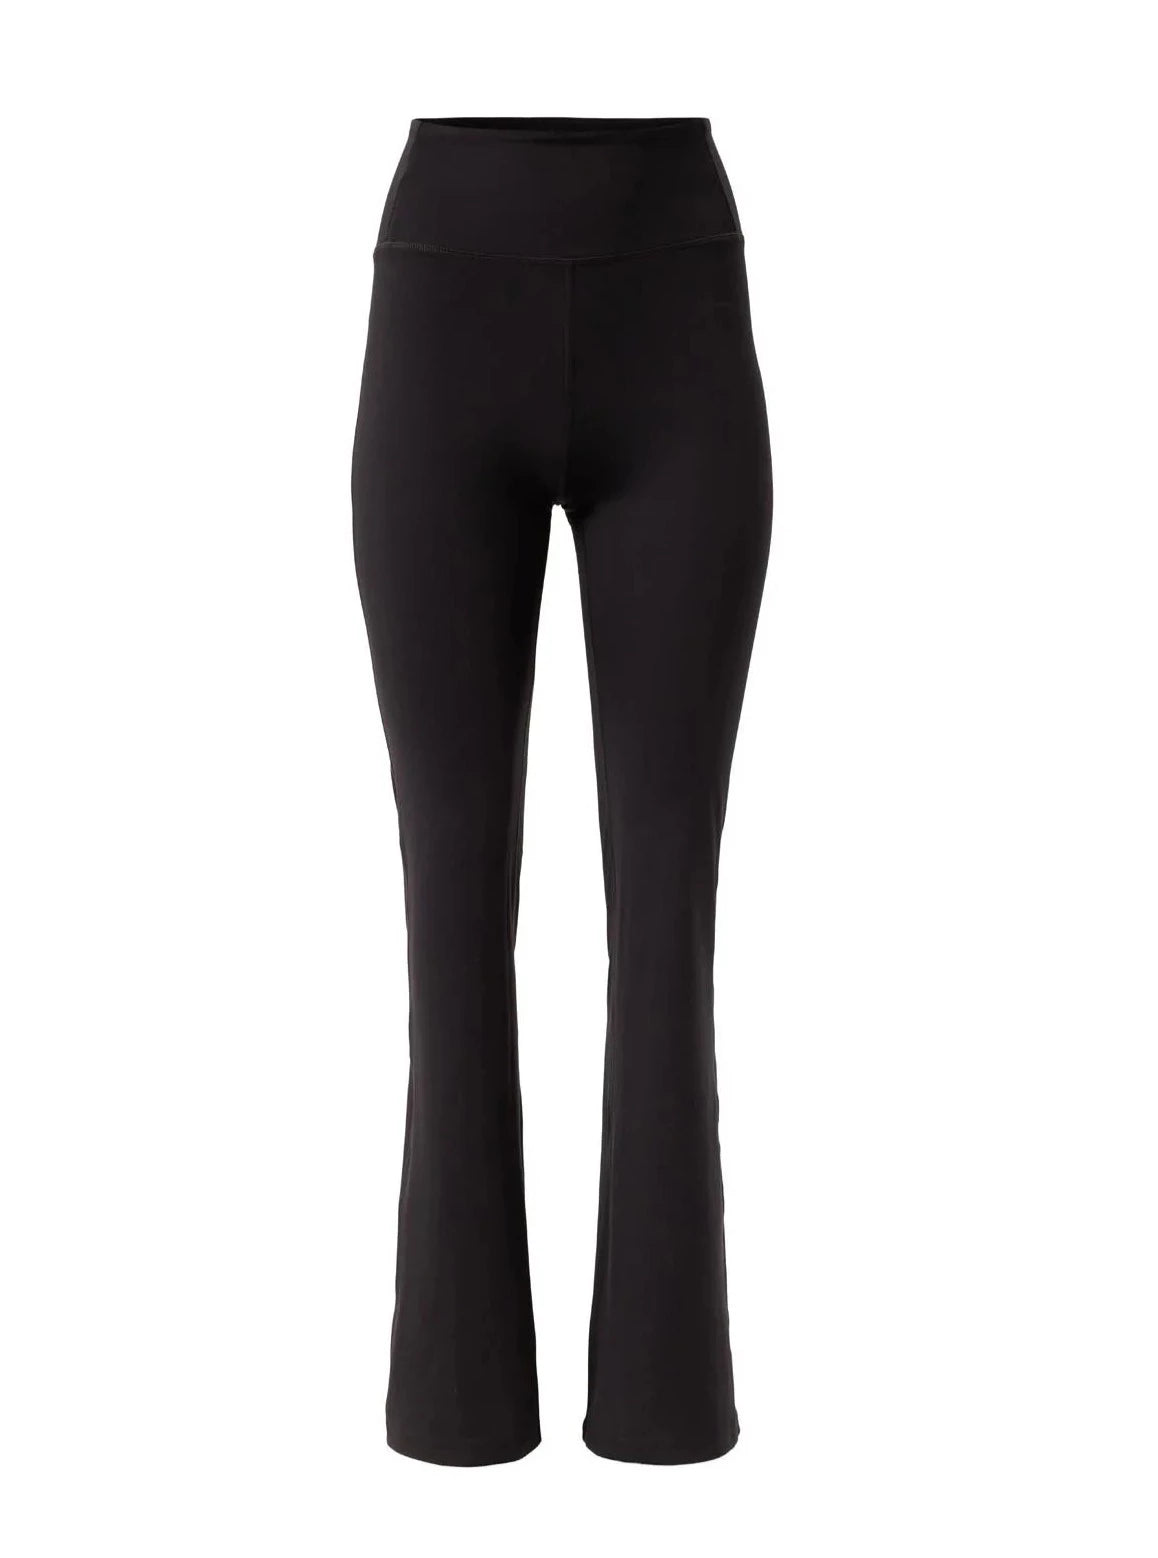 Lumana Leakproof Yoga Pant Leggings, 22 Inseam, Black, 3X, Single Pair 